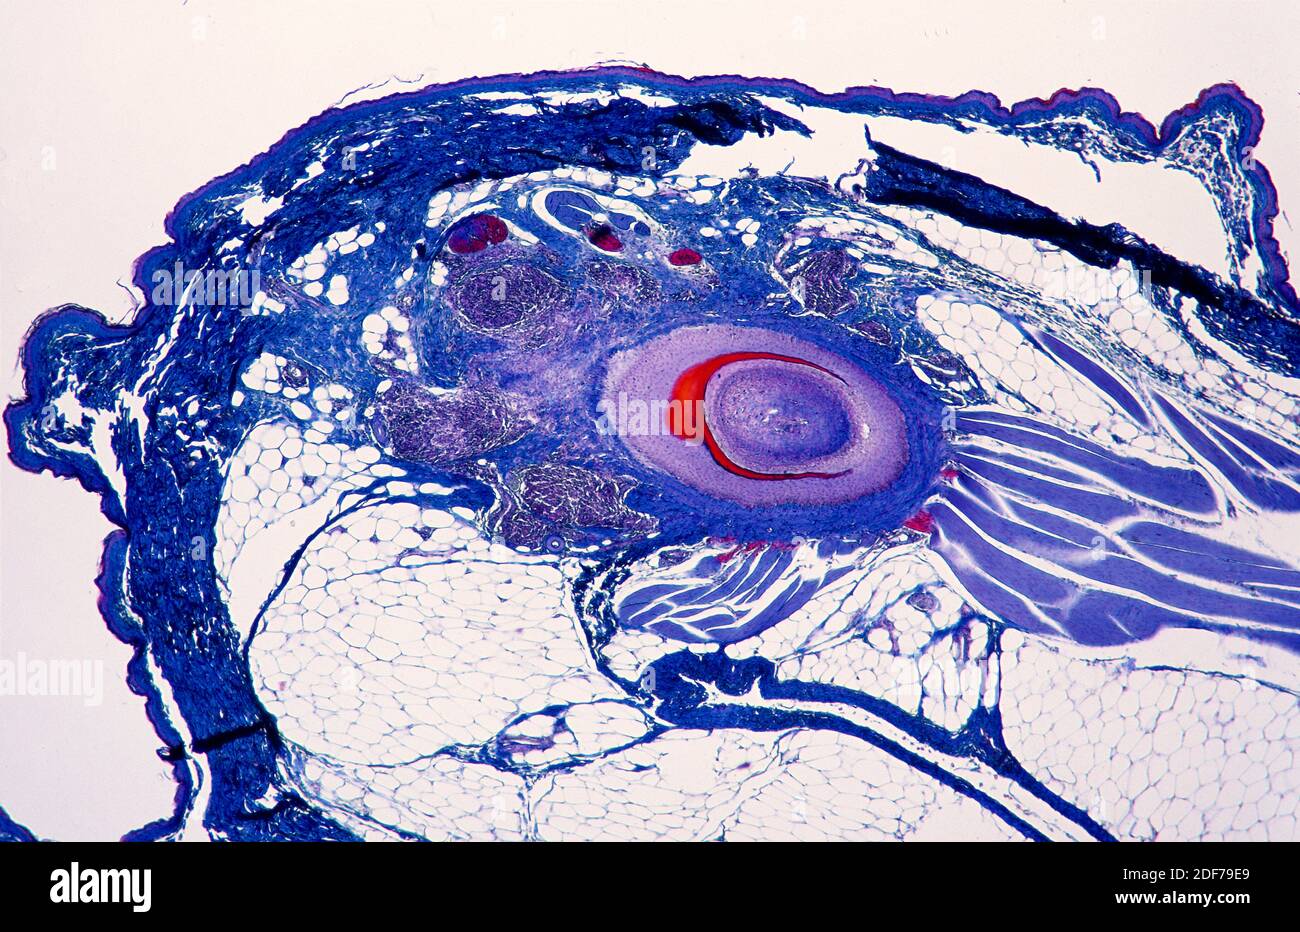 Vogelepidermis Abschnitt zeigt die Basis einer Feder, Retraktormuskulatur und Fettgewebe. Photomikrograph. Stockfoto